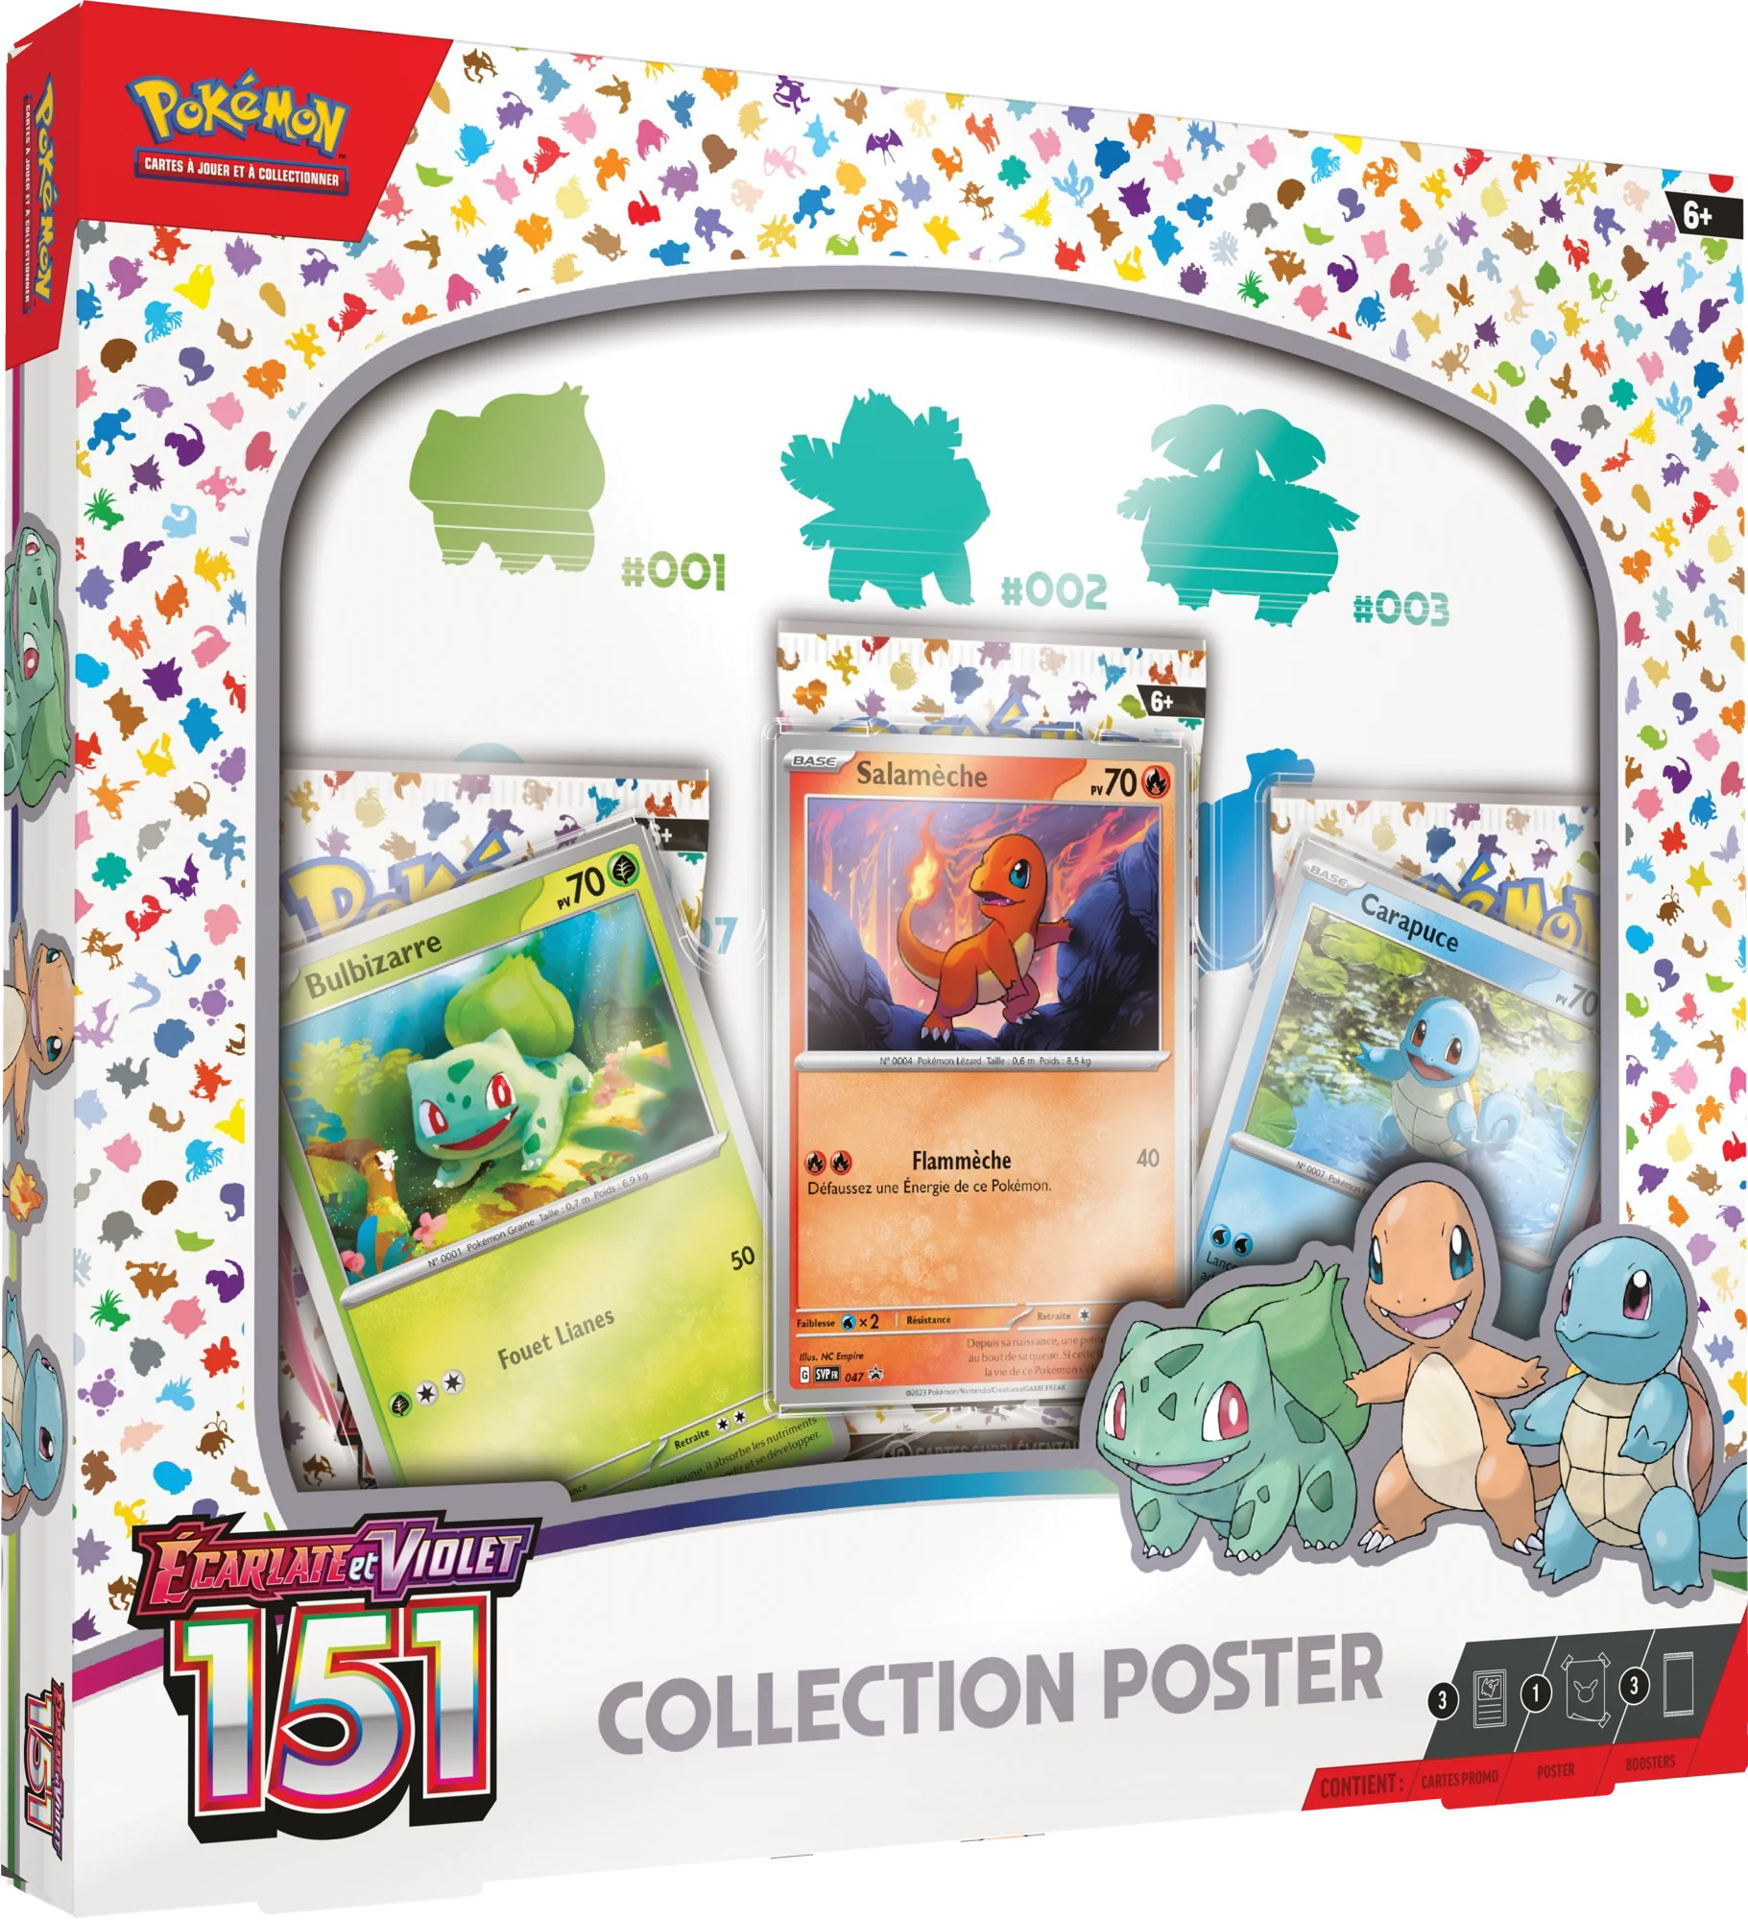 Pokémon JCC : Collection poster Écarlate et Violet - 151